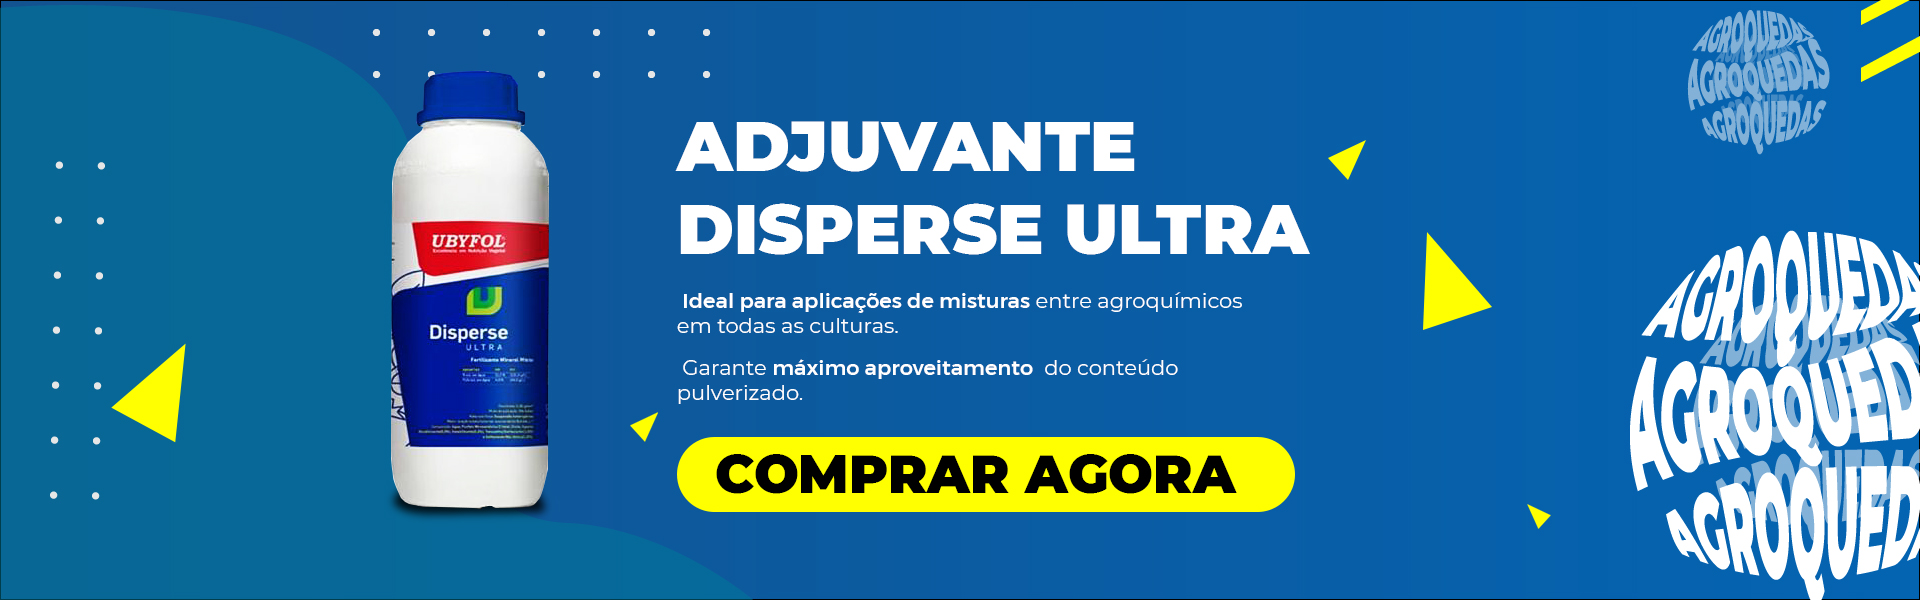 https://agroquedas.com.br/produto/adjuvante-disperse-ultra-lt/